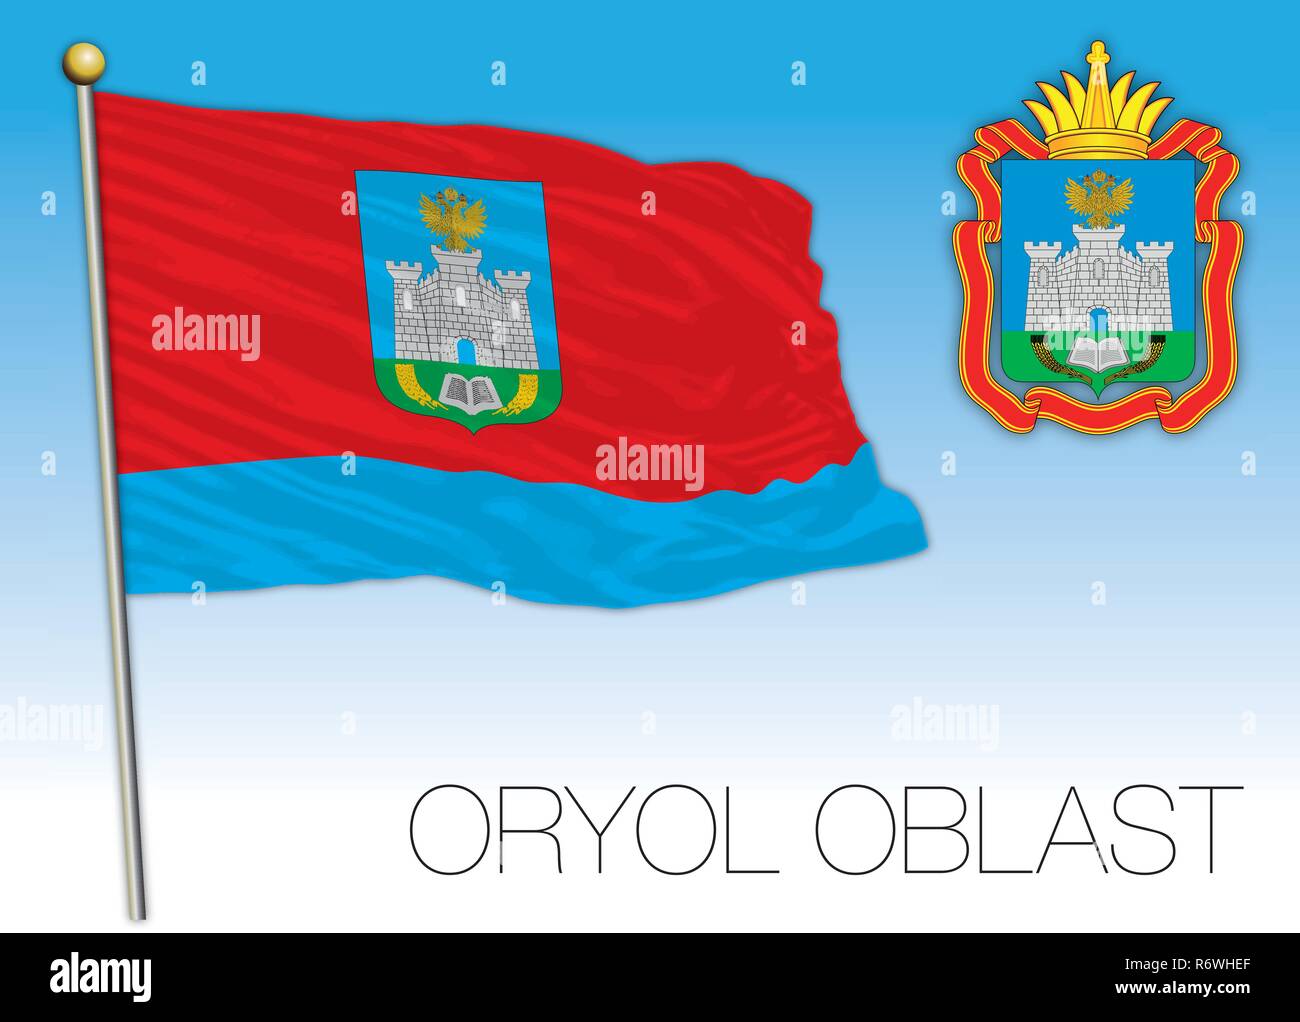 Oryol oblast flag, Russian Federation, vector illustration Stock Vector